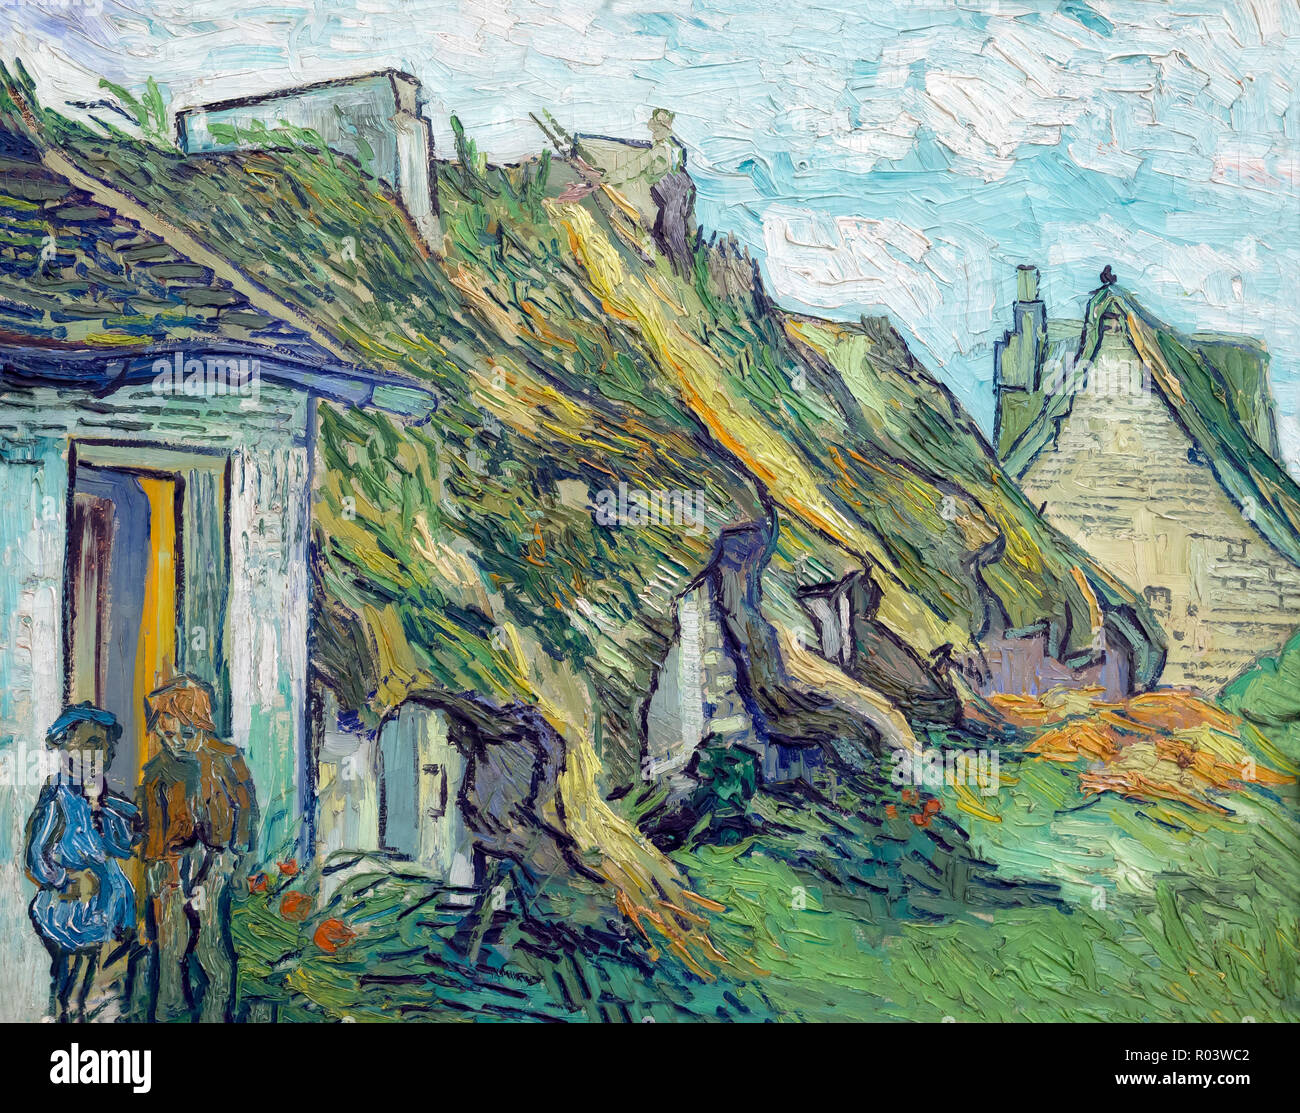 Thatched Sandstone Cottages at Chaponval, Vincent van Gogh, 1890, Zurich Kunsthaus, Zurich, Switzerland, Europe Stock Photo